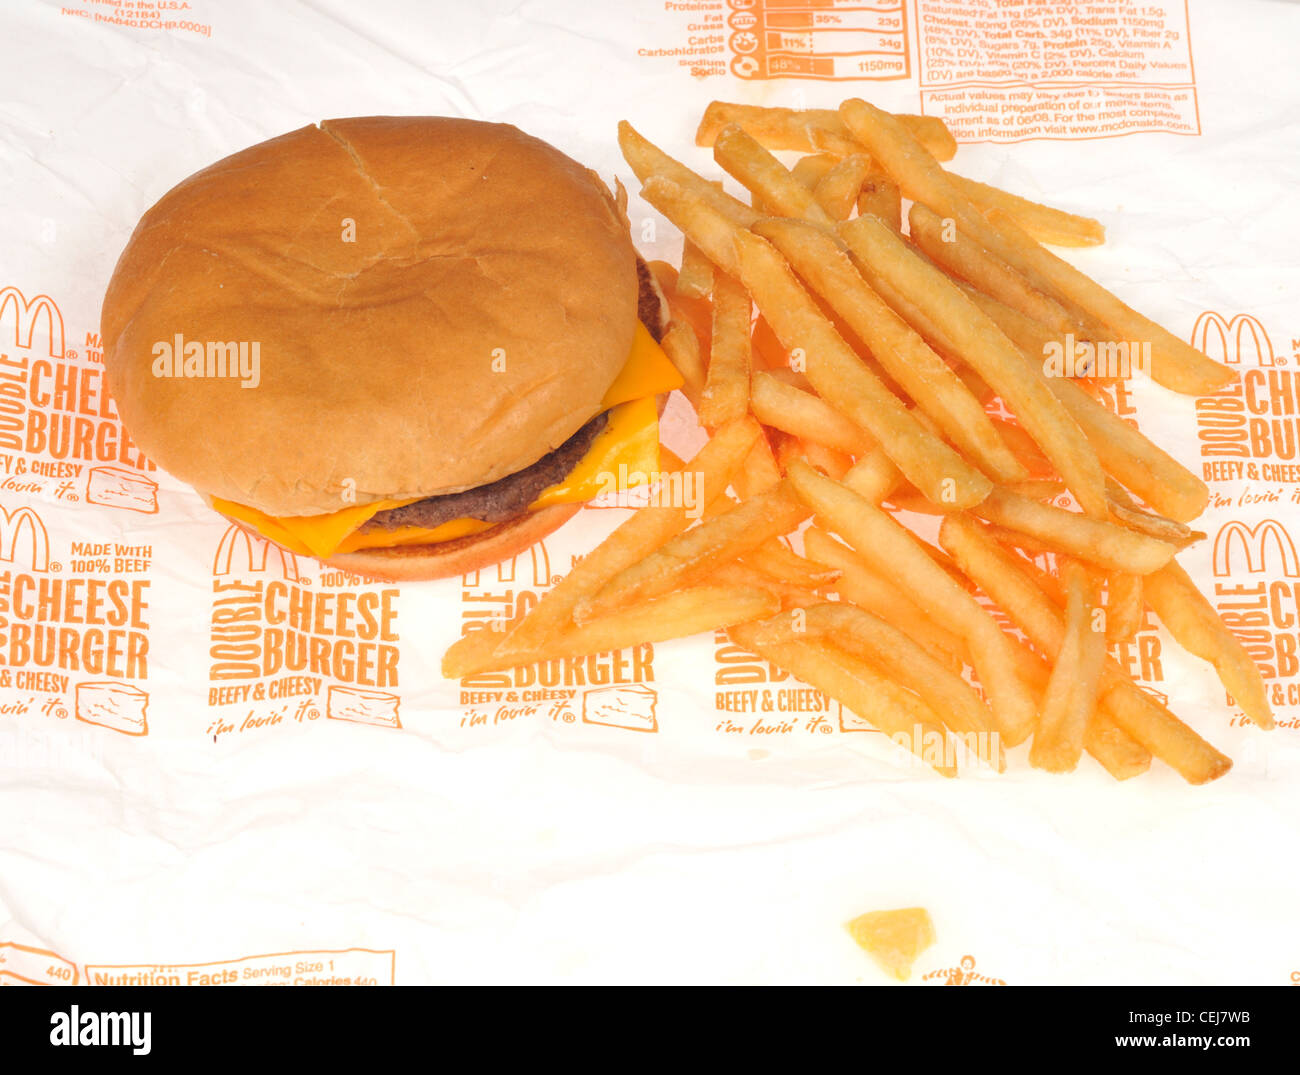 McDonalds cheeseburger double enveloppe sur papier avec des frites ou des chips sur fond blanc USA Banque D'Images